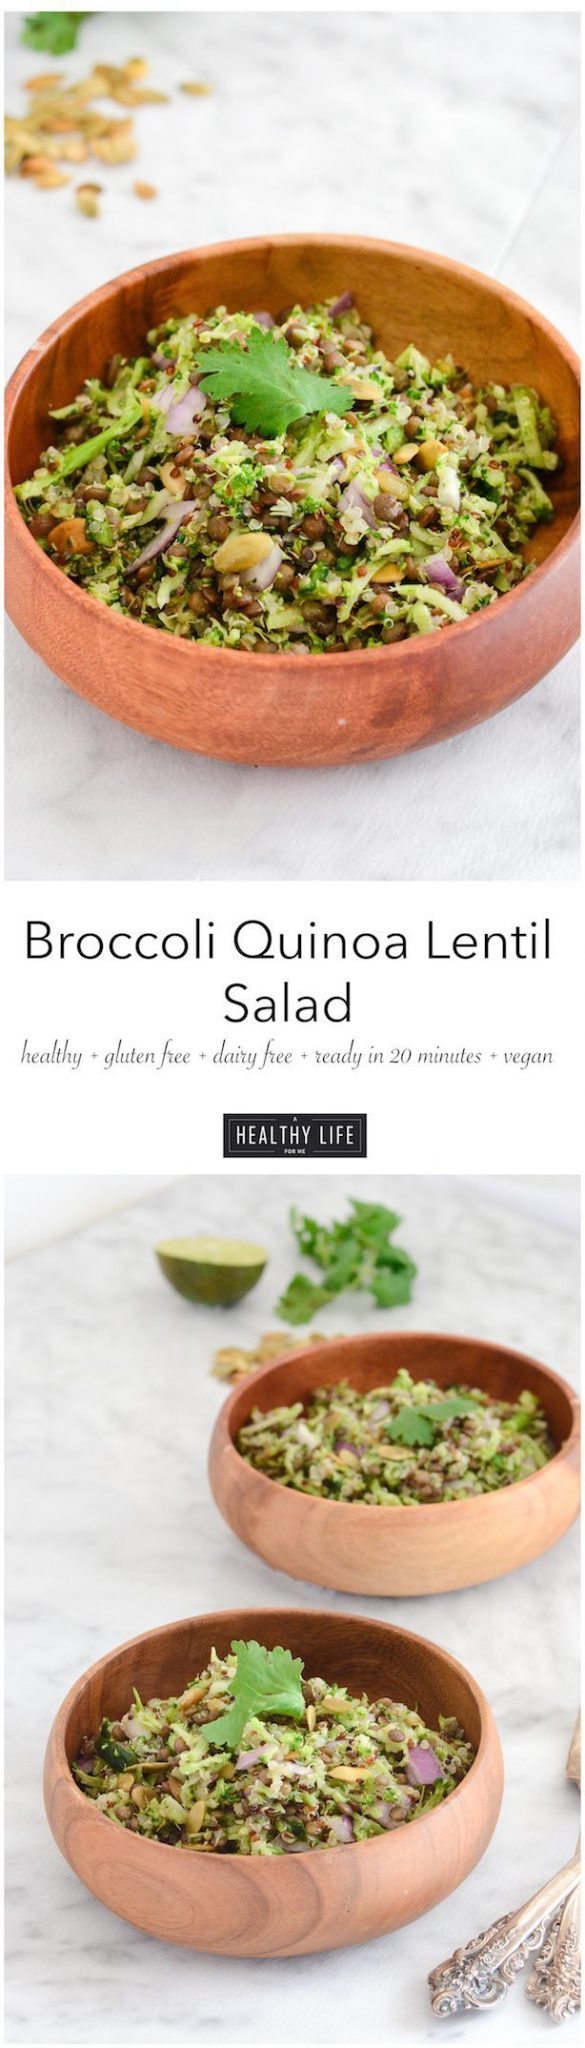 Broccoli Quinoa Lentil Salad Recipe Healthy High Protein and Amino Acid | ahealthylifeforme.com